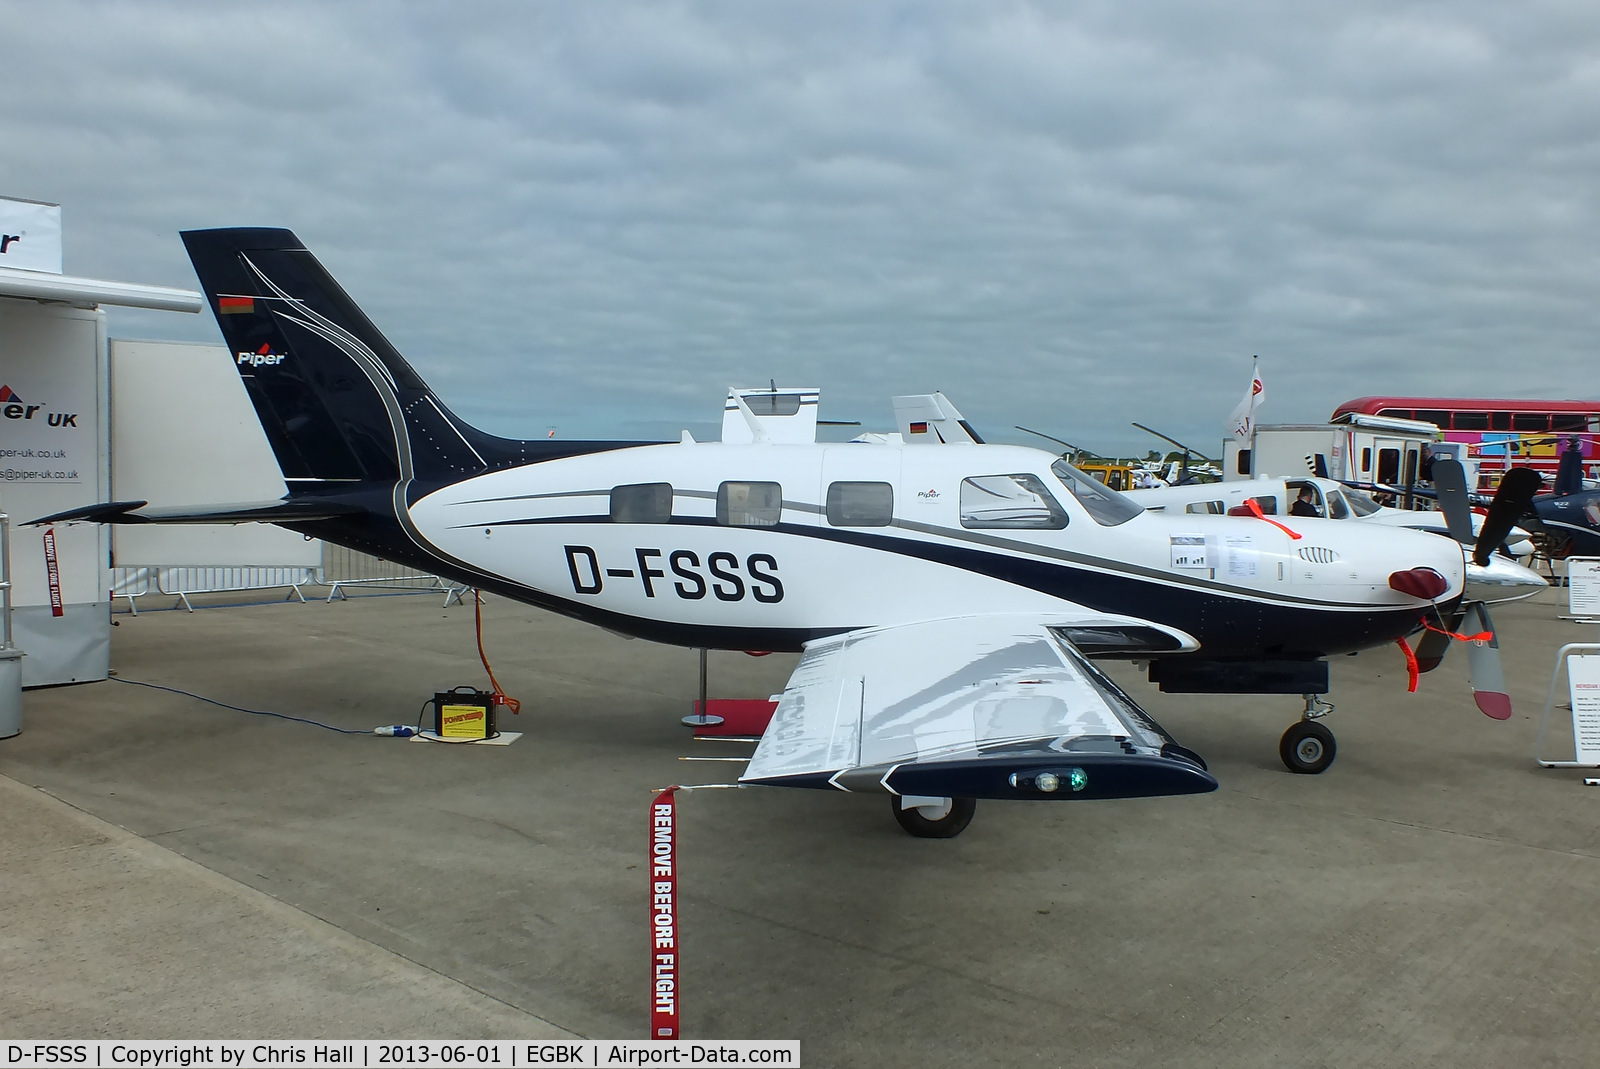 D-FSSS, 2012 Piper PA-46 Malibu Meridian C/N 4697512, at AeroExpo 2013